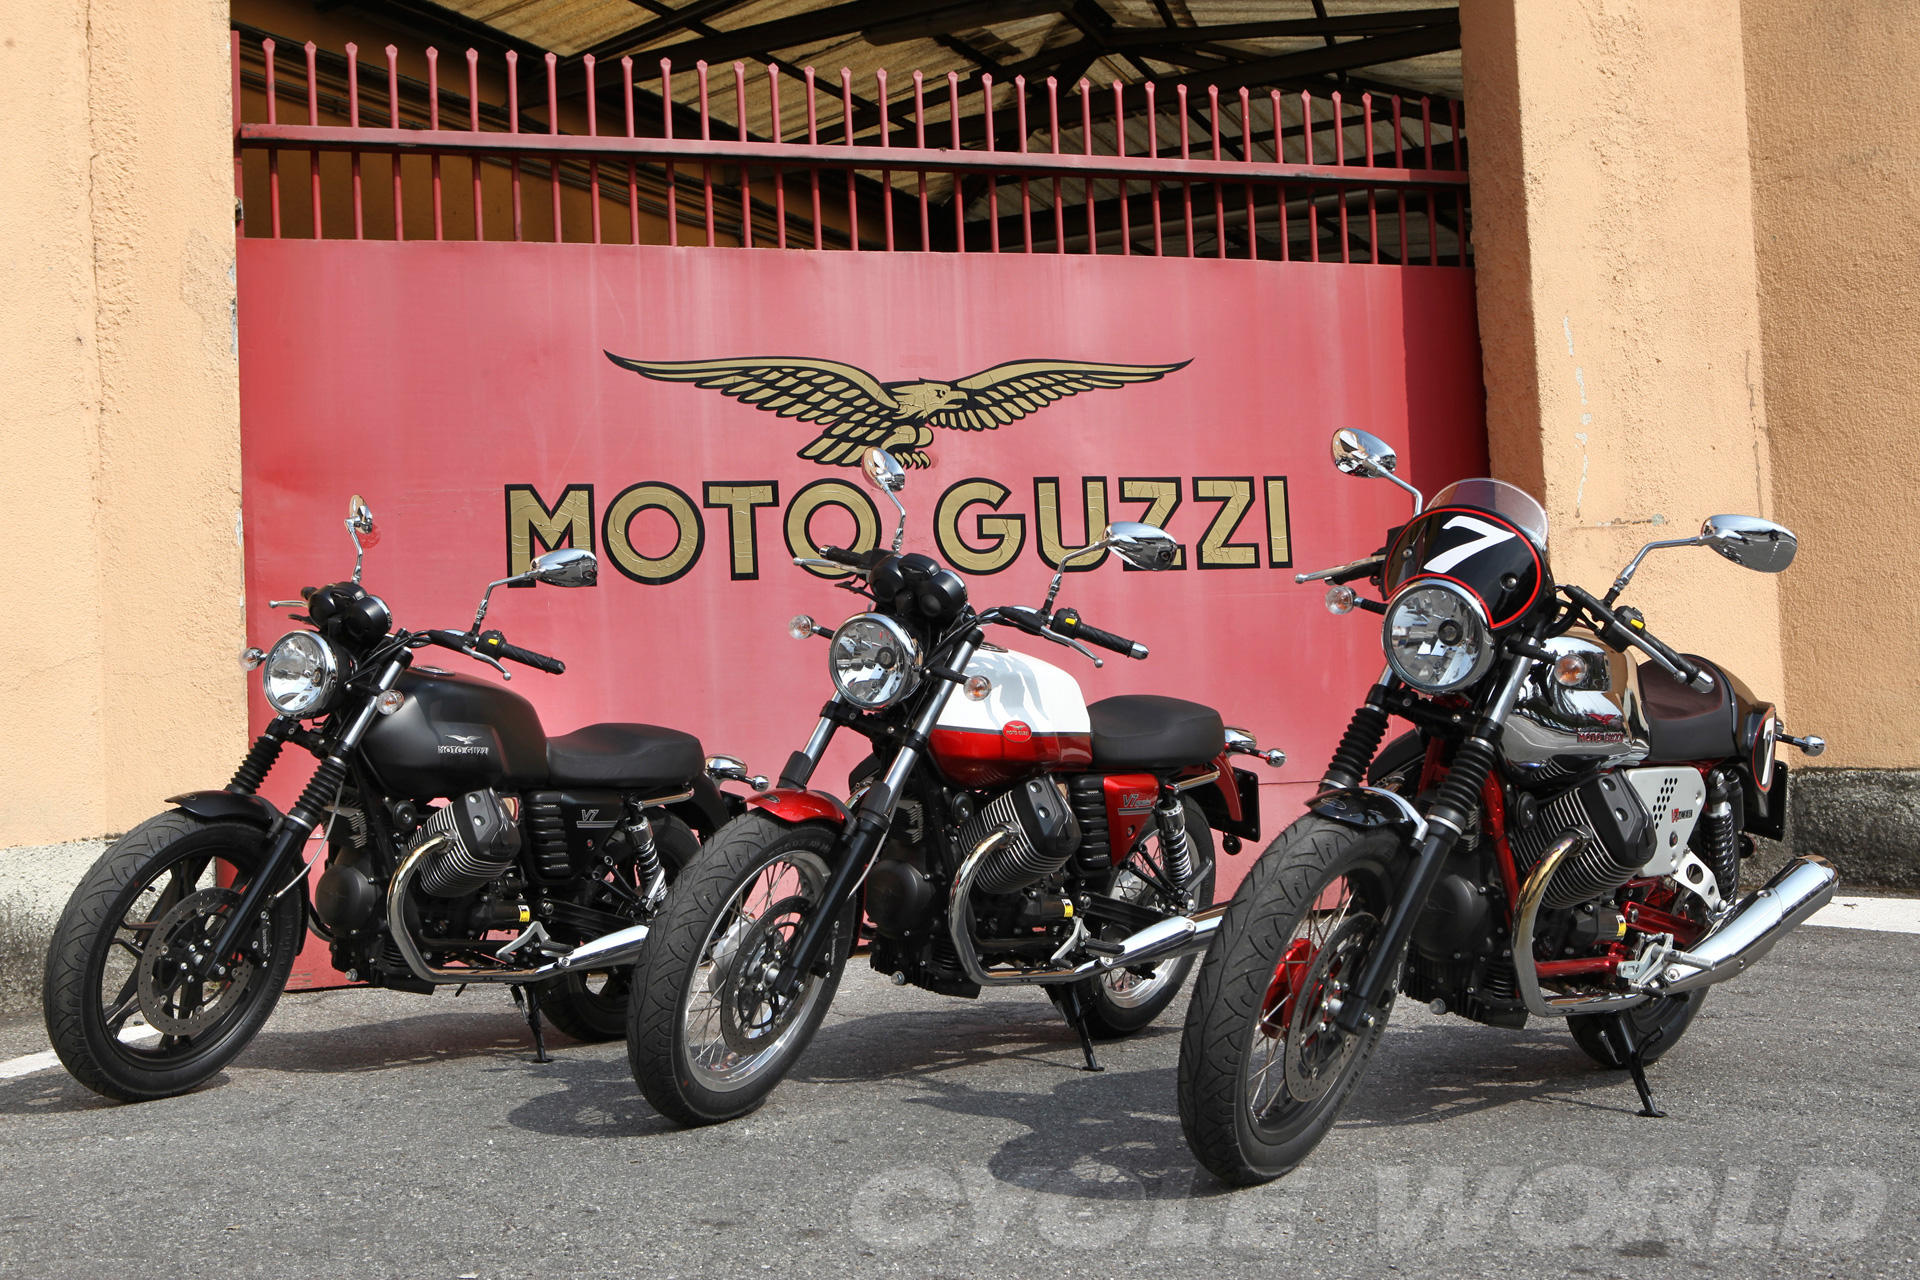 Moto Guzzi V7 gets more retro design - webBikeWorld